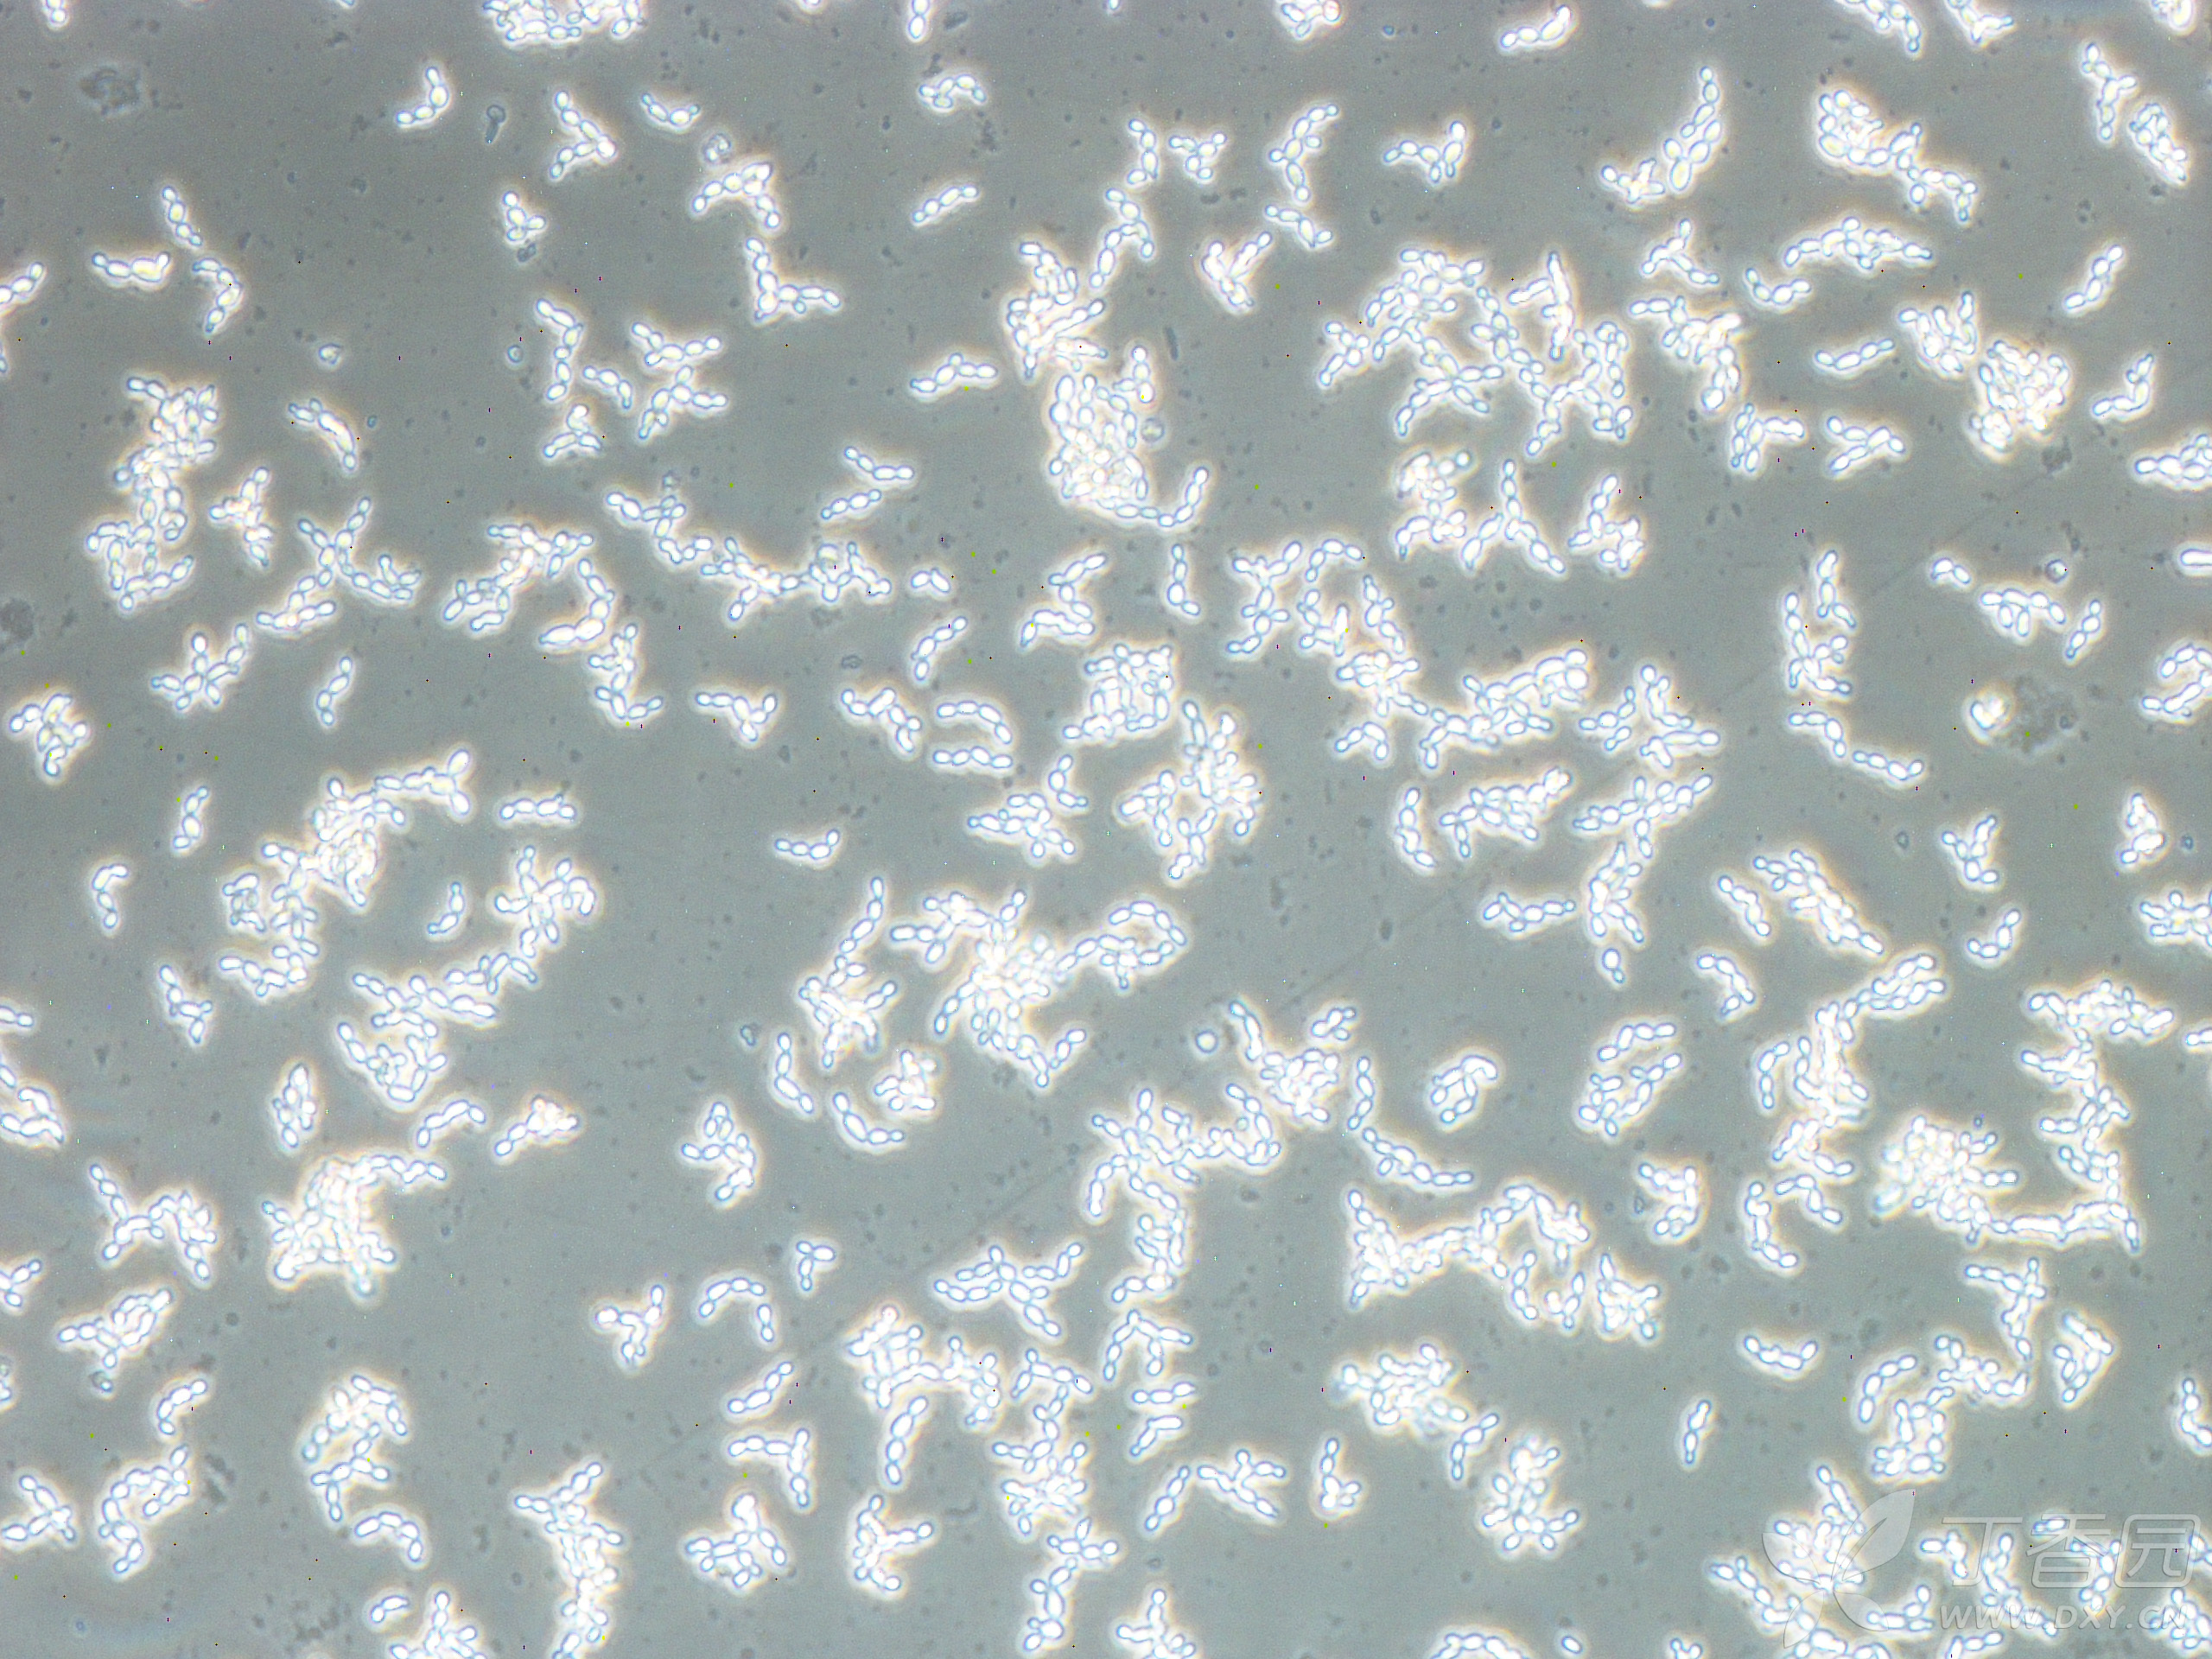 提小鼠脑星型胶质细胞,细胞污染如图片,这是什么情况